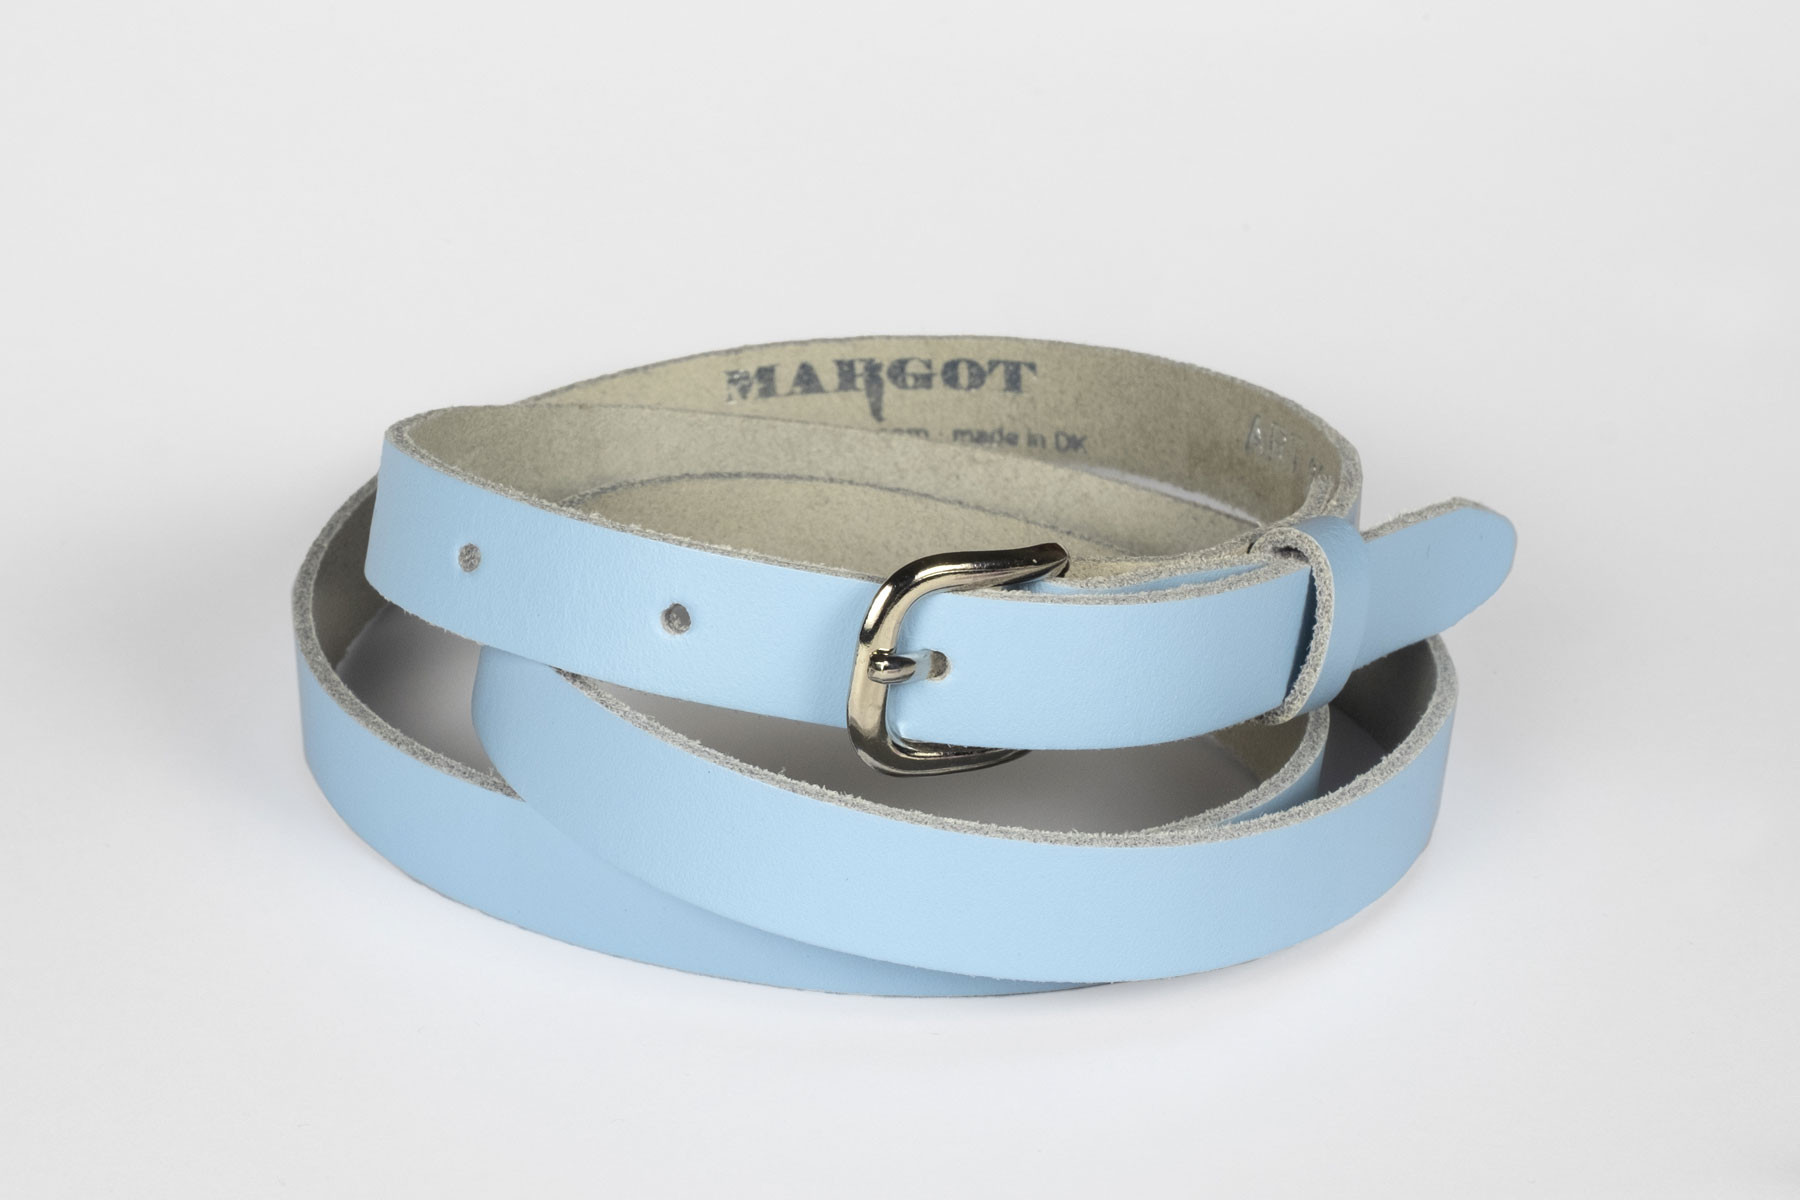 Sky blue Power Belt - livvidde 78-91 cm